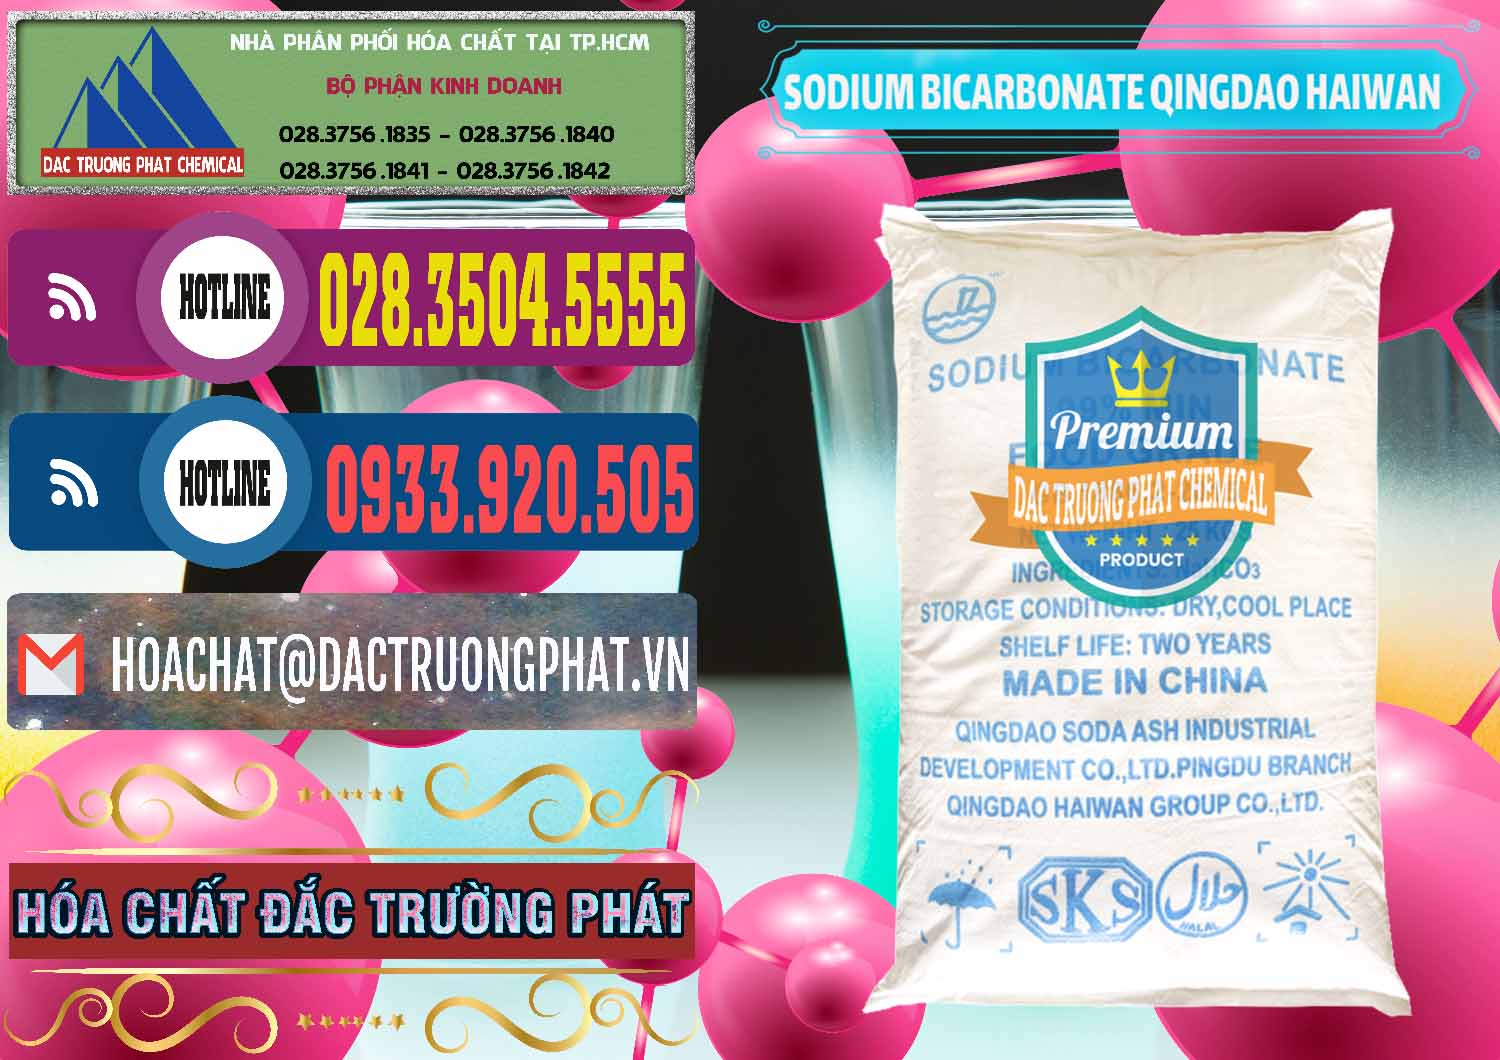 Cty chuyên cung ứng & bán Sodium Bicarbonate – Bicar NaHCO3 Food Grade Qingdao Haiwan Trung Quốc China - 0258 - Cty cung cấp _ kinh doanh hóa chất tại TP.HCM - muabanhoachat.com.vn